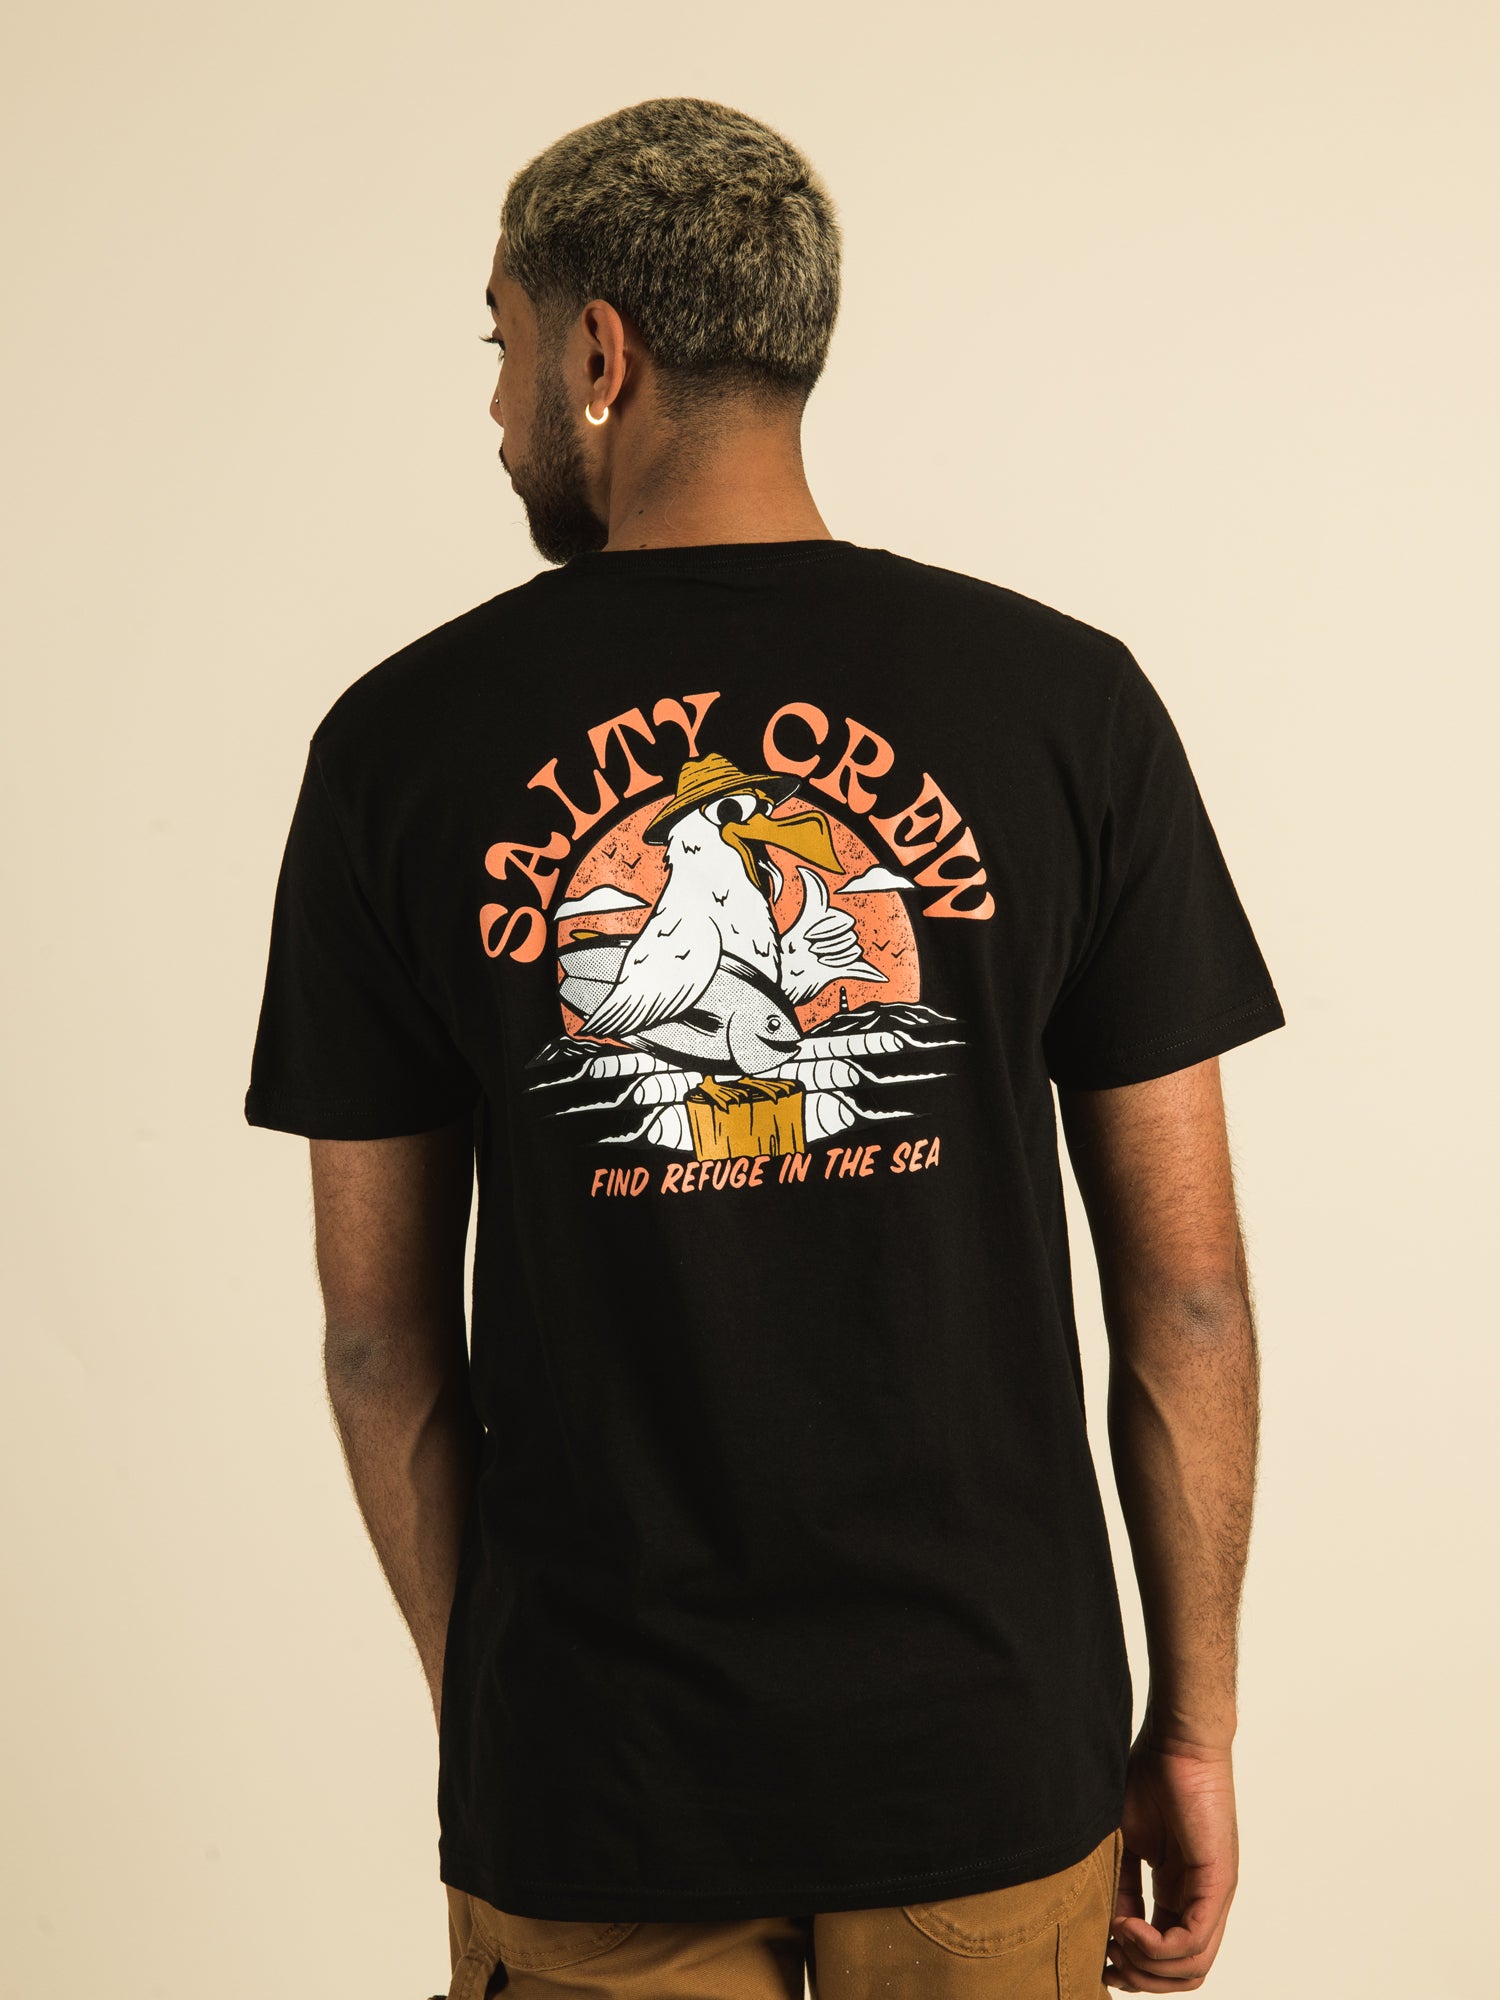 Busch Gone Fishing T-Shirt-Small 